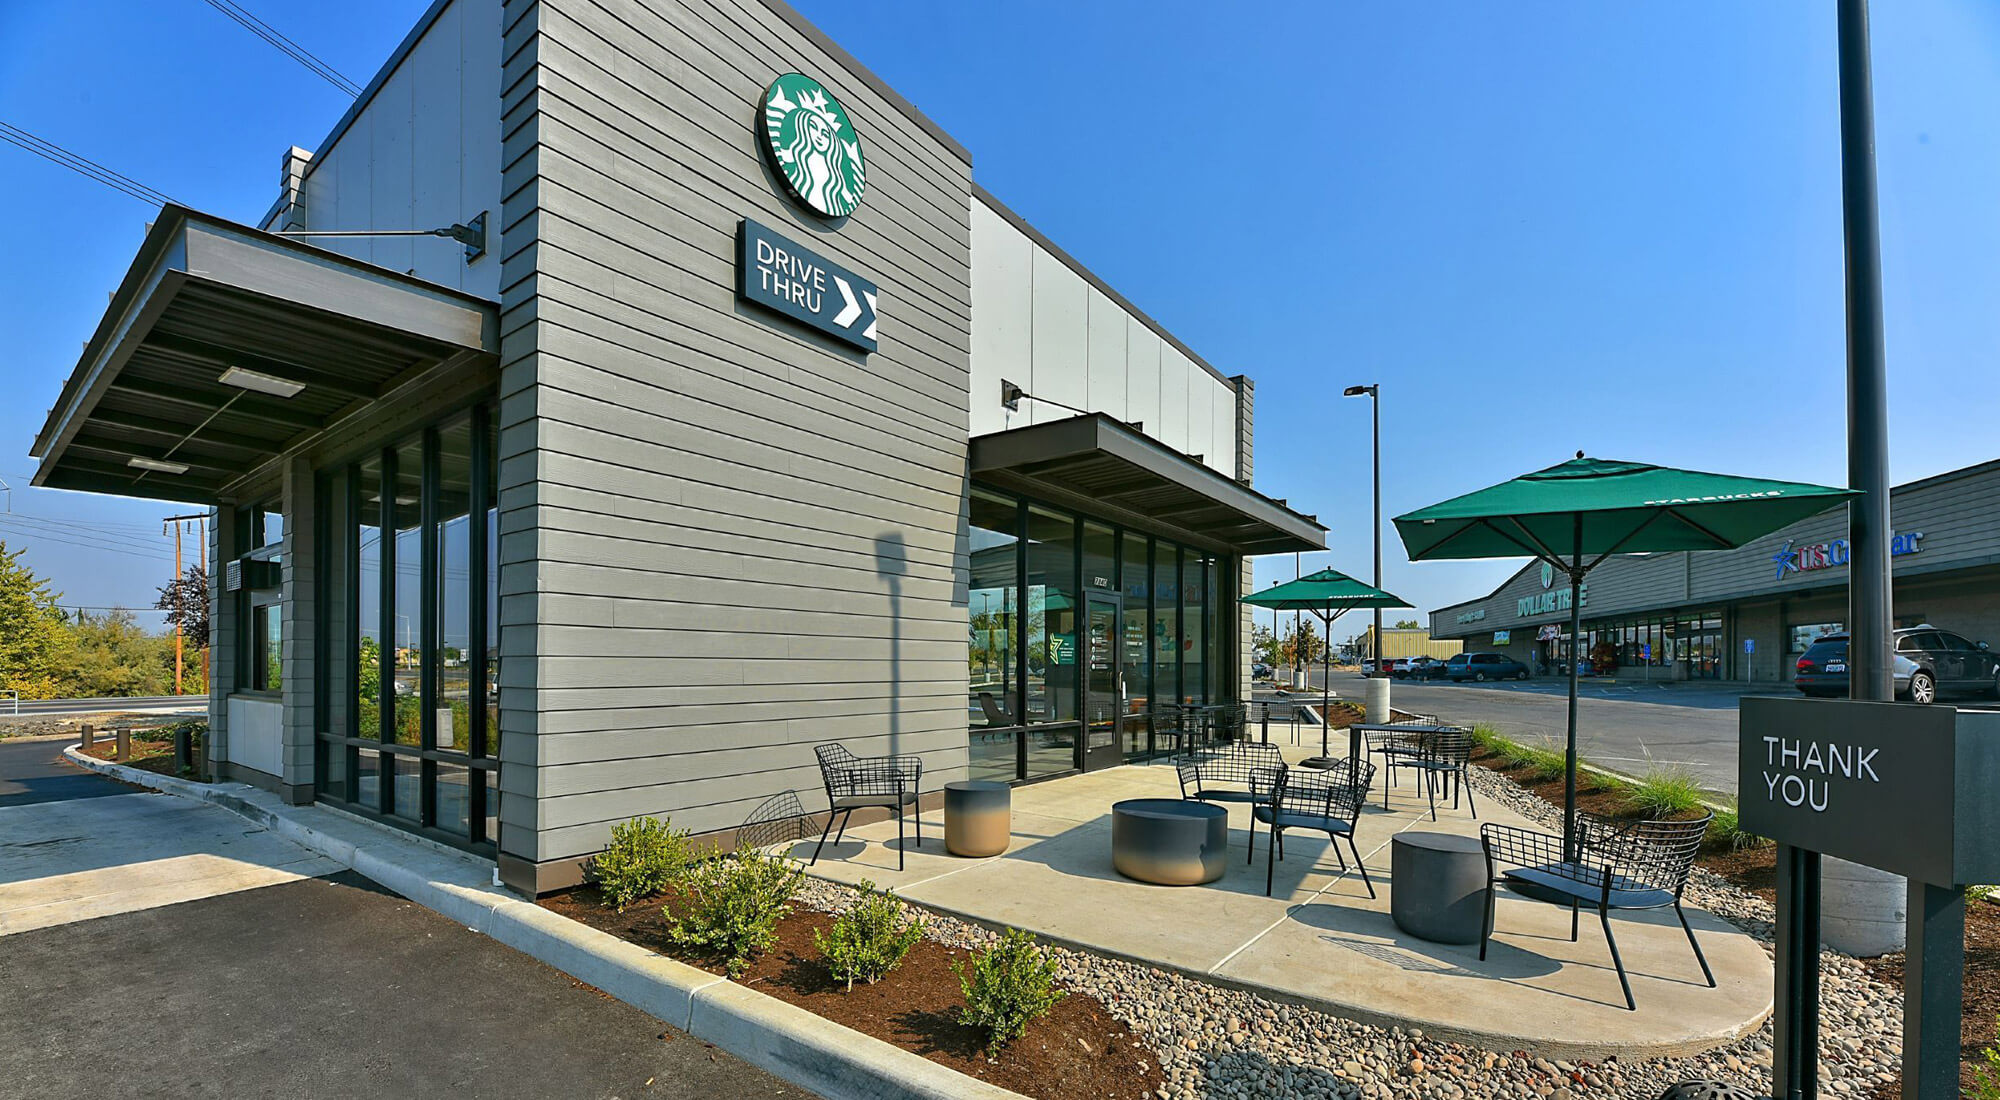 Starbucks – White City, Oregon